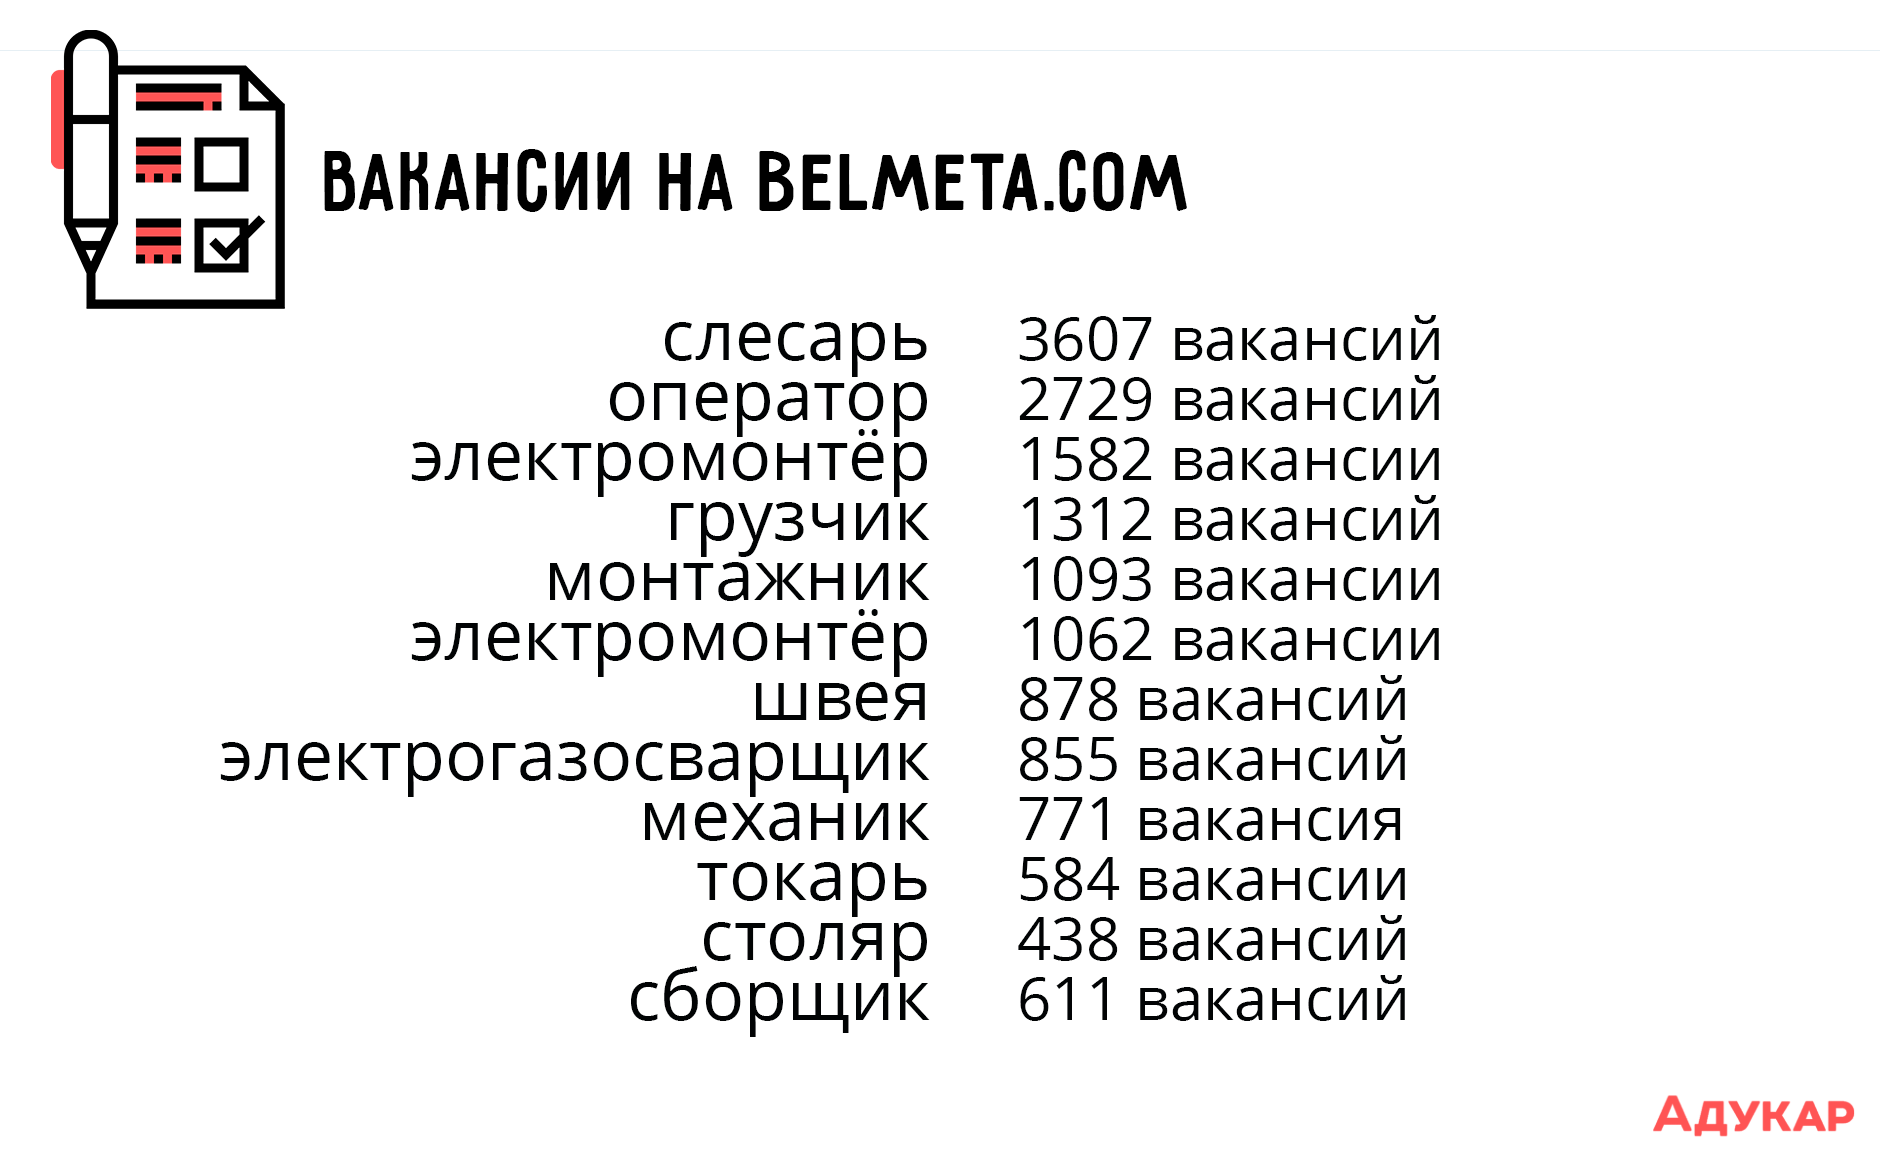 Колледжи Беларуси предлагают около 70 различных специализаций. Если тебе сложно выбрать, читай наши советы